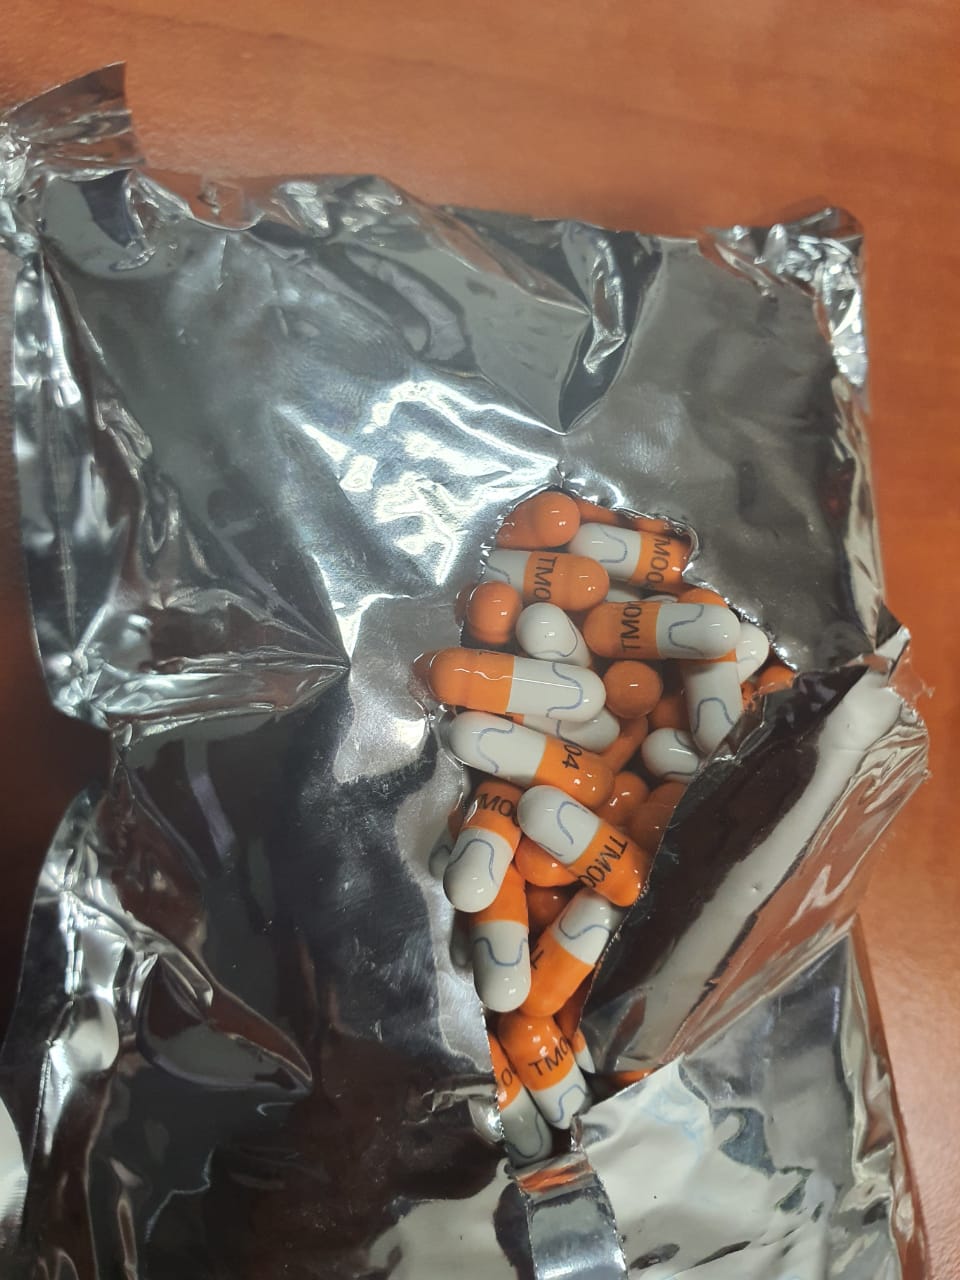 Mandrax tablets, heroine capsules, methaqualone powder